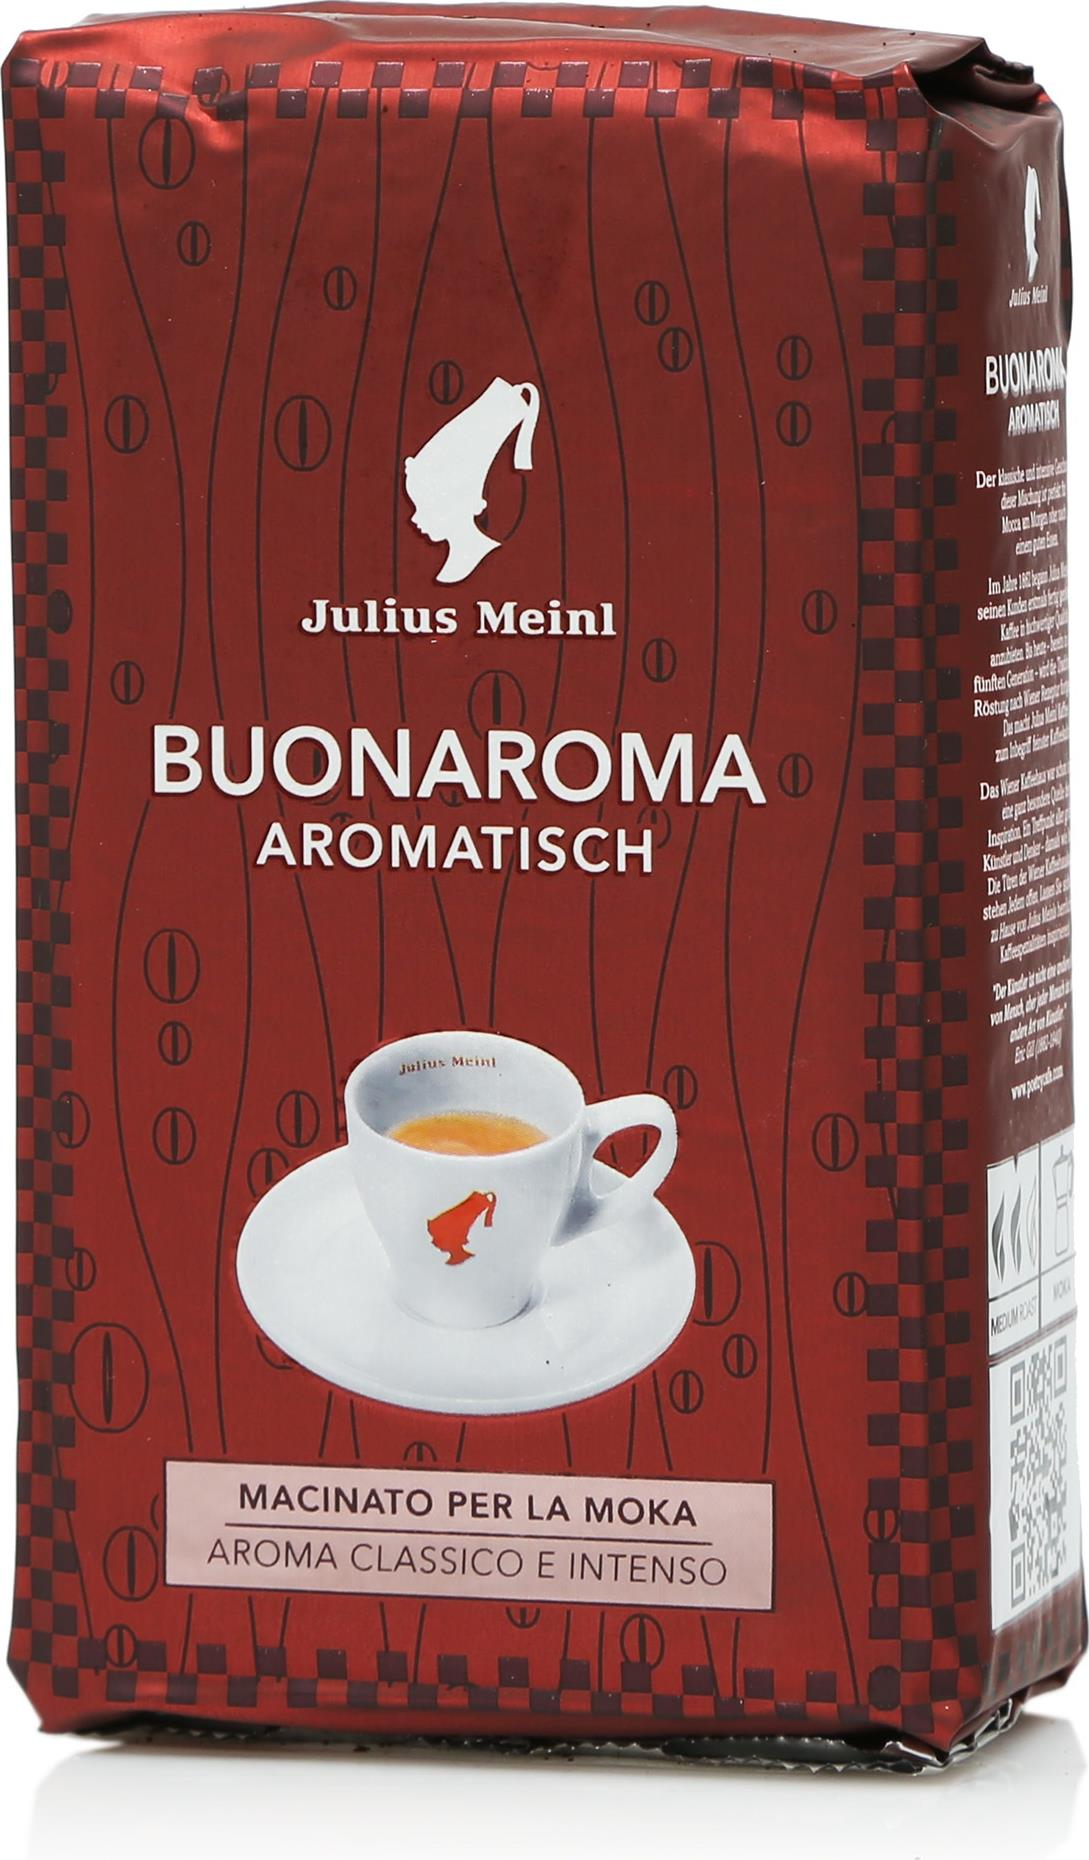 Джулиус майнл. Джулиус Майнл кофе. Кофе молотый Julius Meinl buonaroma. Джулиус Майнл кофе молотый. Кофе молотый Julius Meinl Espresso buonaroma.